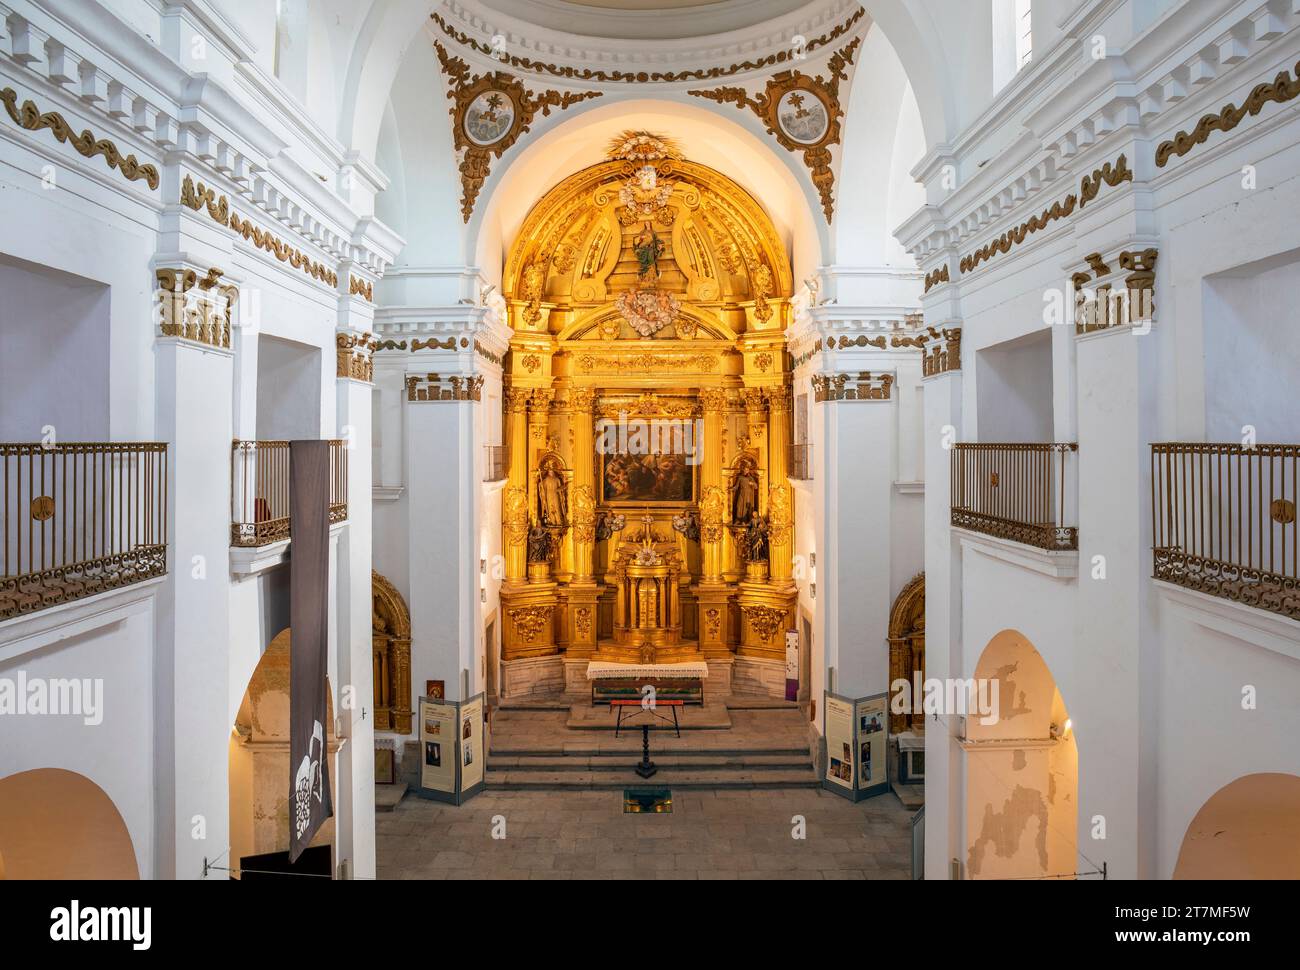 Europa, Spagna, Estremadura, Cáceres, la Chiesa di San Francisco Javier (Chiesa del sangue prezioso) che mostra l'interno della nave e dell'altare Foto Stock